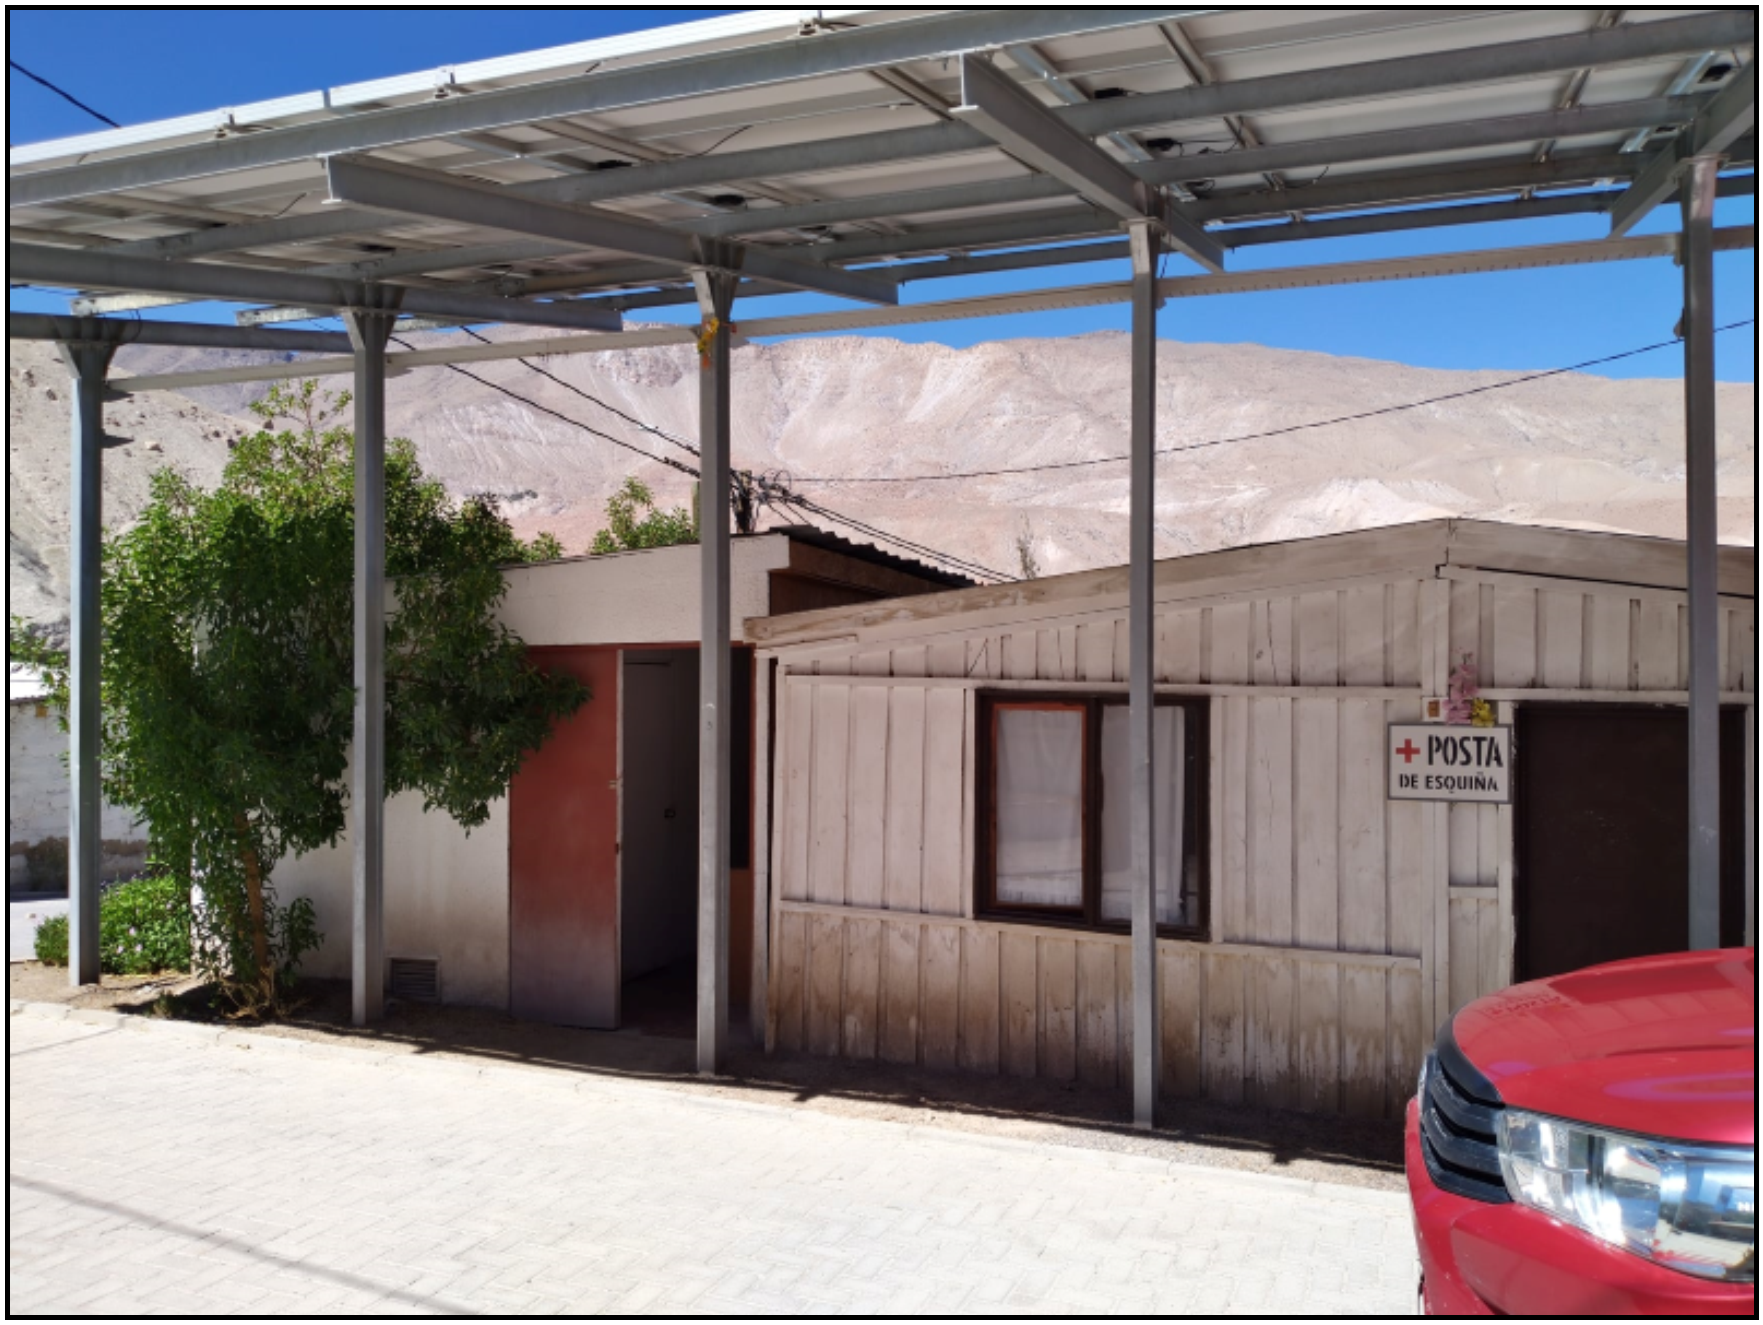 Constatando Daños en equipos Fotovoltaicos de Esquiña